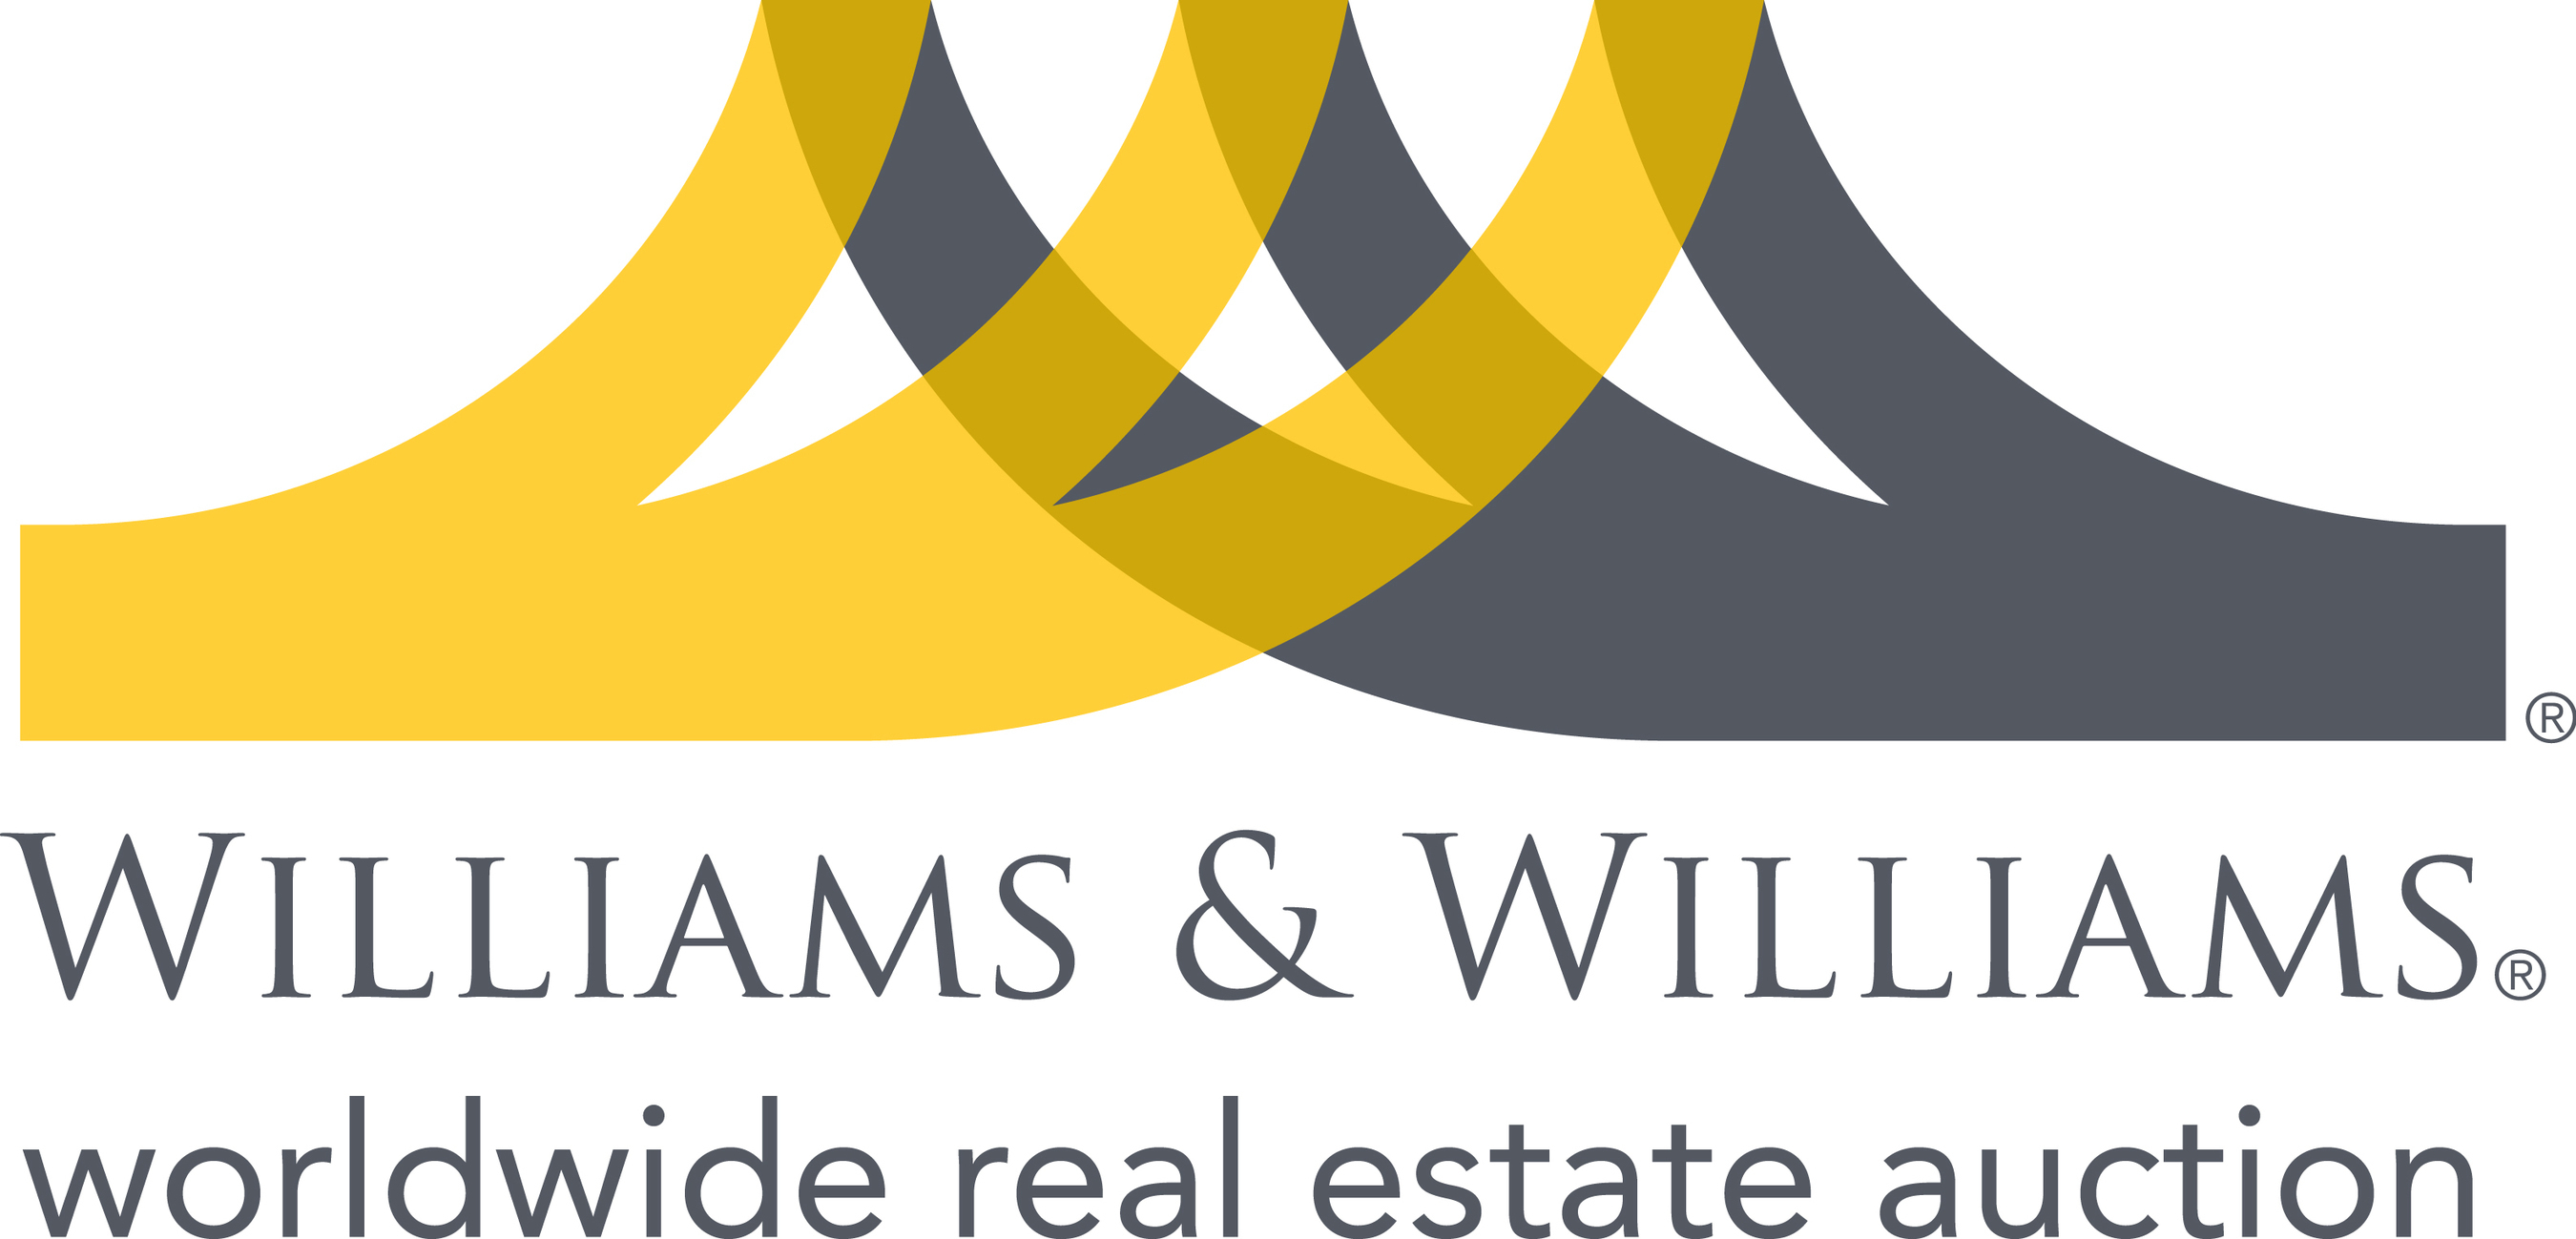 Williams & Williams logo.